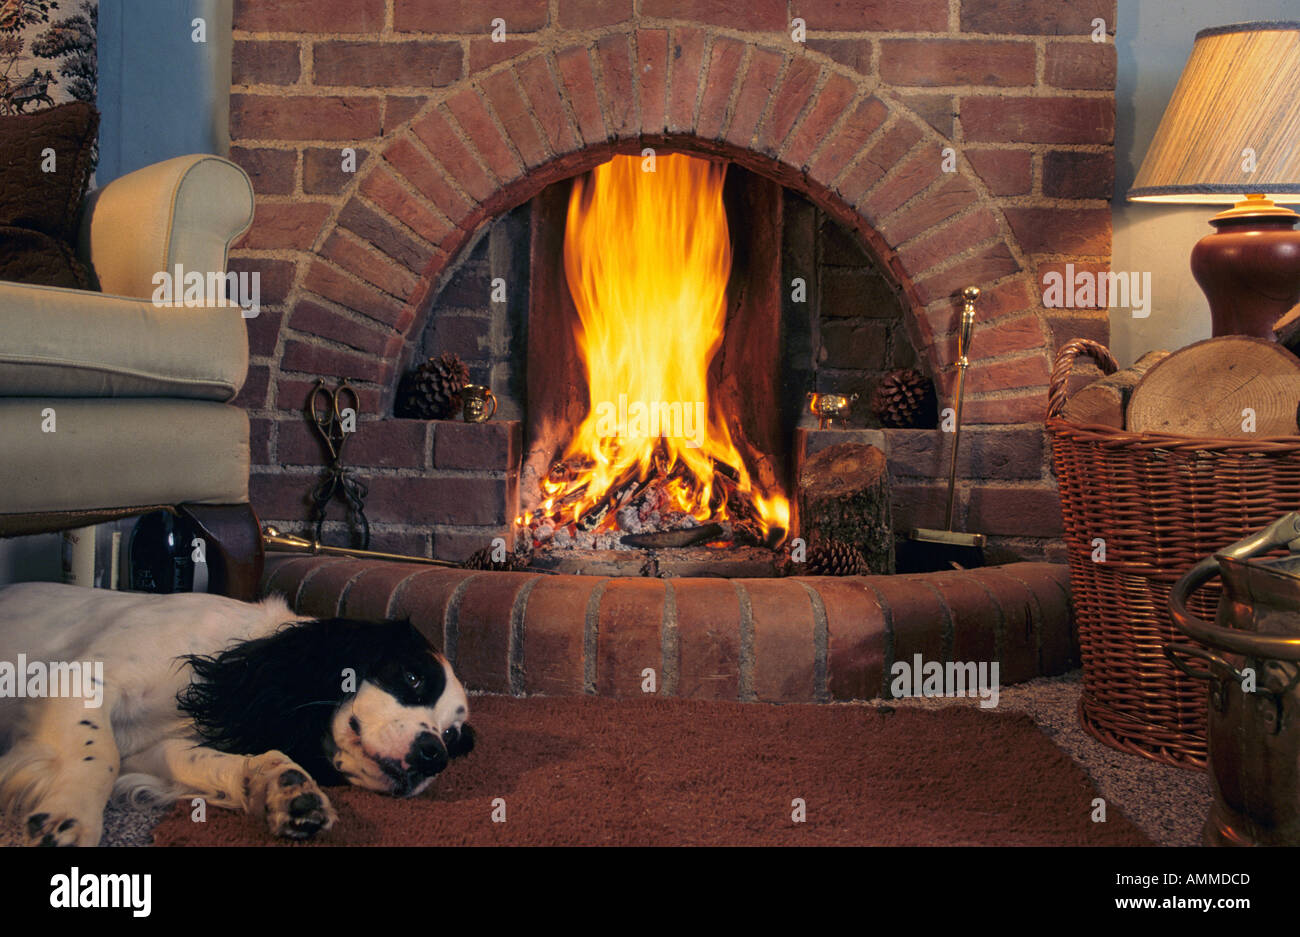 Fireside scene Stock Photo